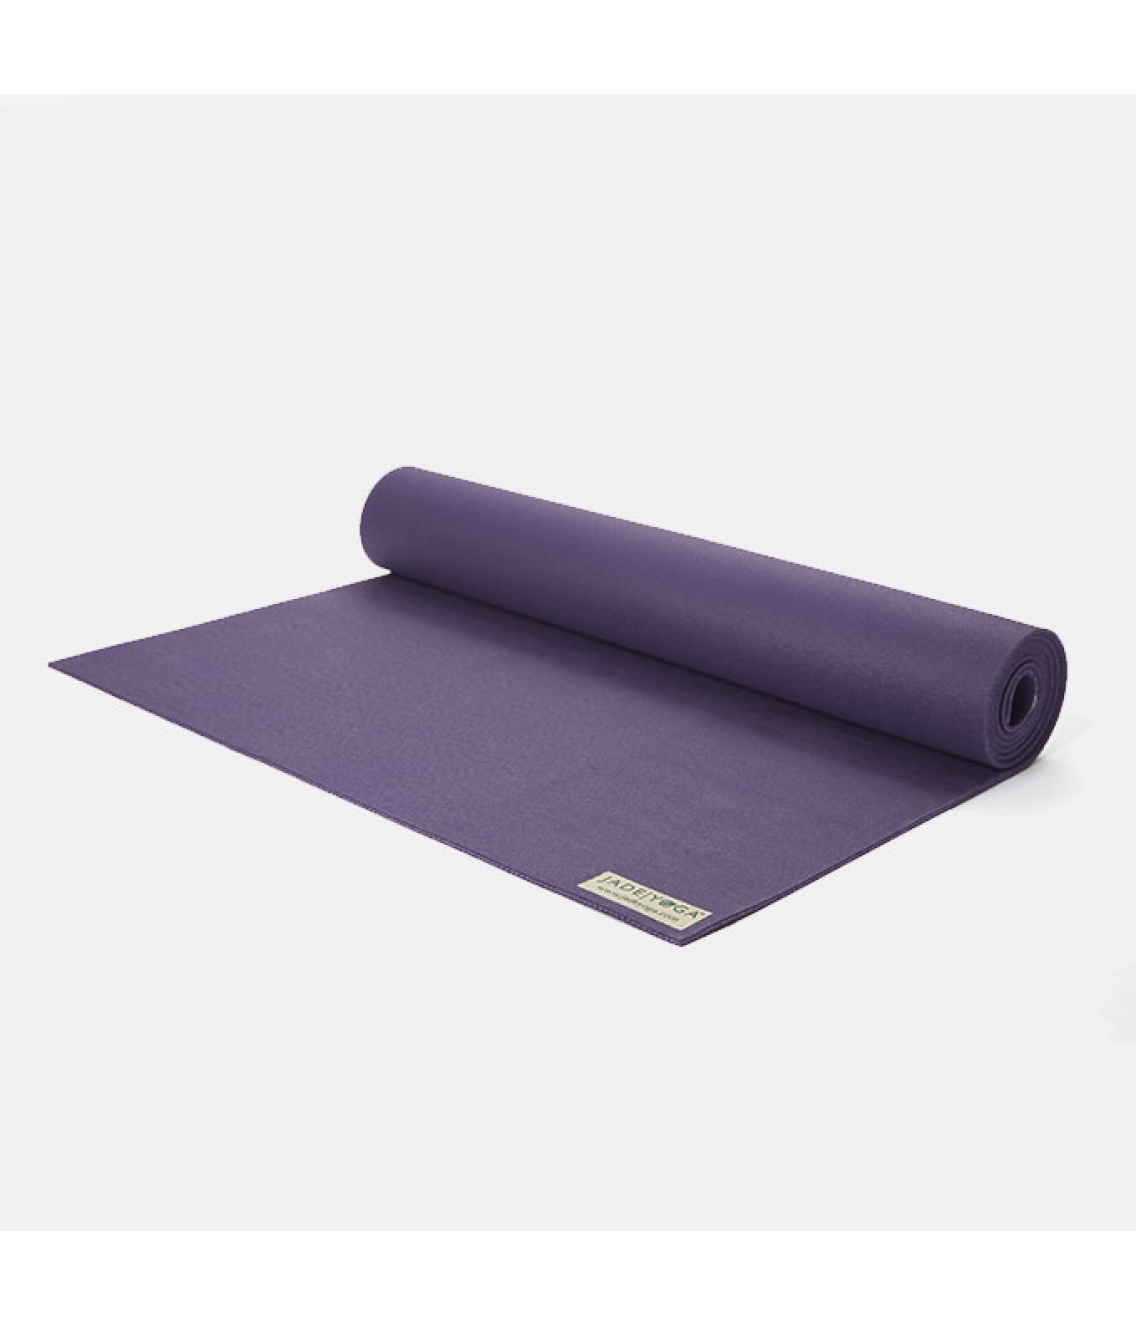 Каучуковый коврик Jade Harmony 173*60*0,5 см - Фиолетовый